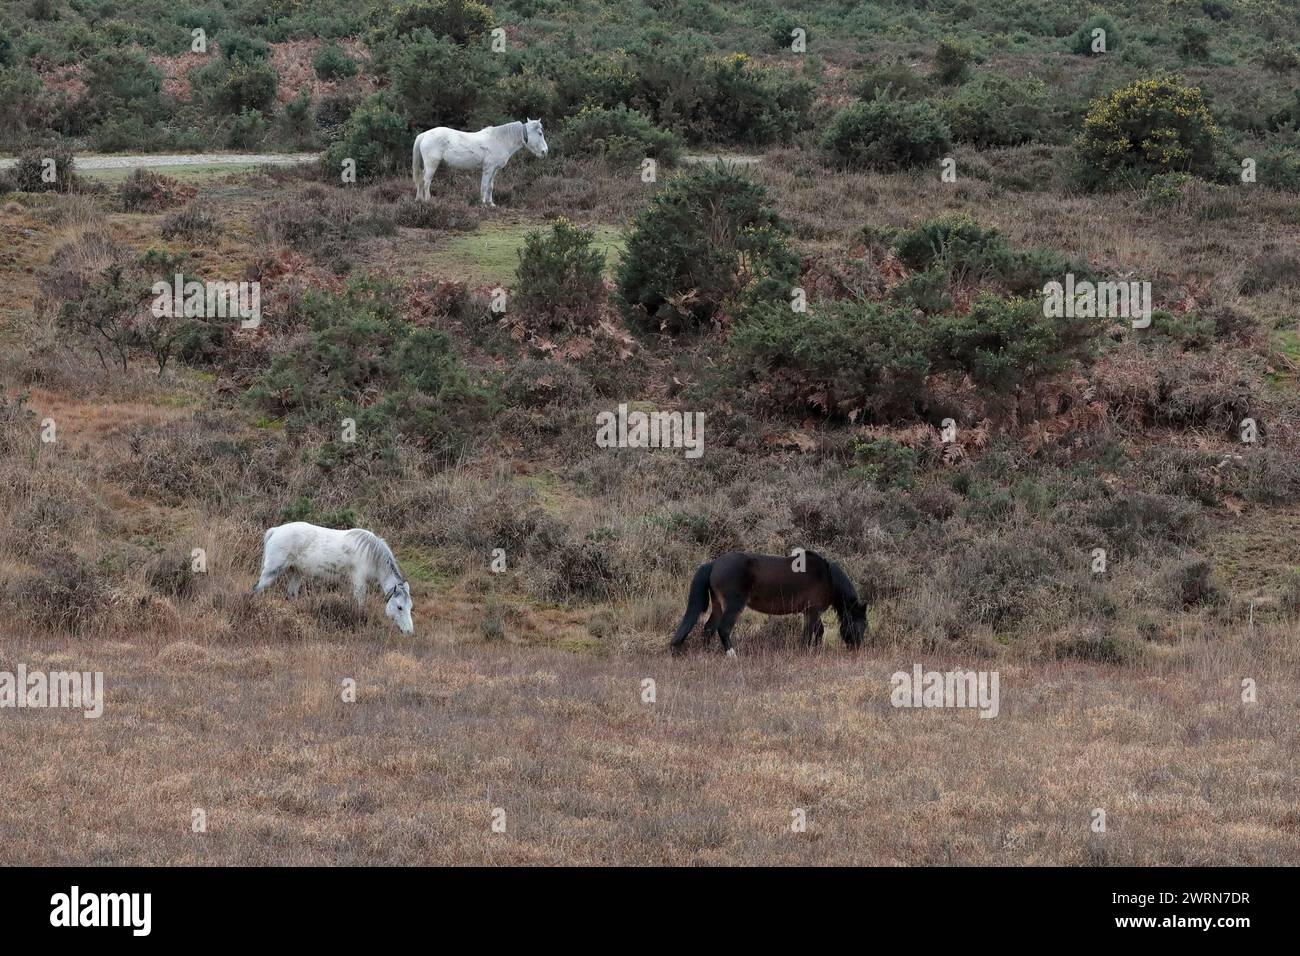 Tre pony della New Forest, due bianchi e uno marroni, che pascolano in aperta brughiera rivolta verso destra. Il paesaggio comprende erica, Gorse e un sentiero pedonale. Foto Stock